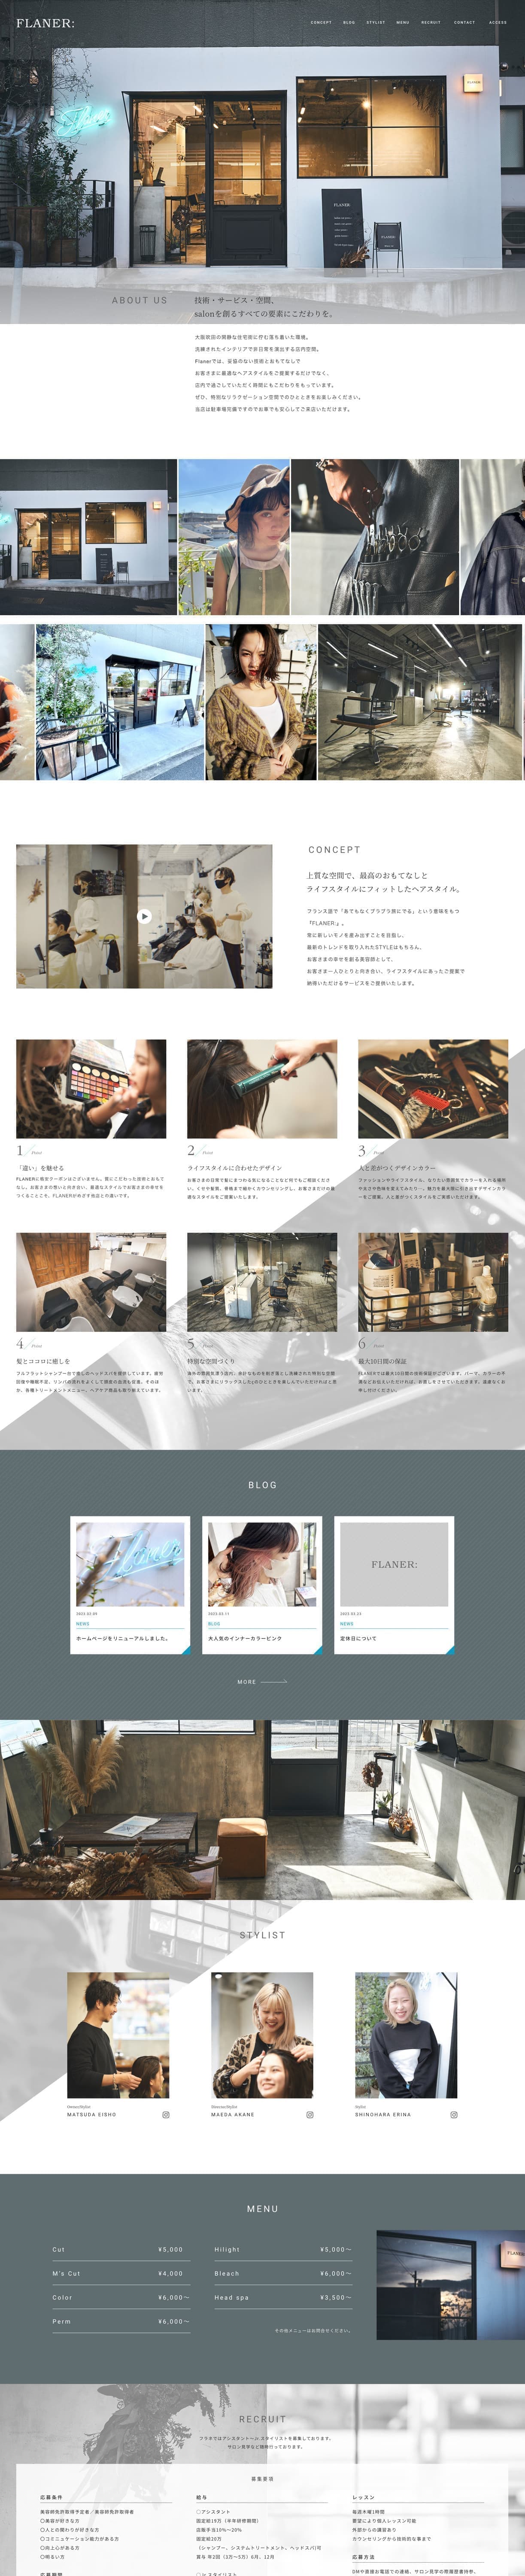 北摂ホームページデザイン_webサイト_吹田市江坂のデザイン事務所